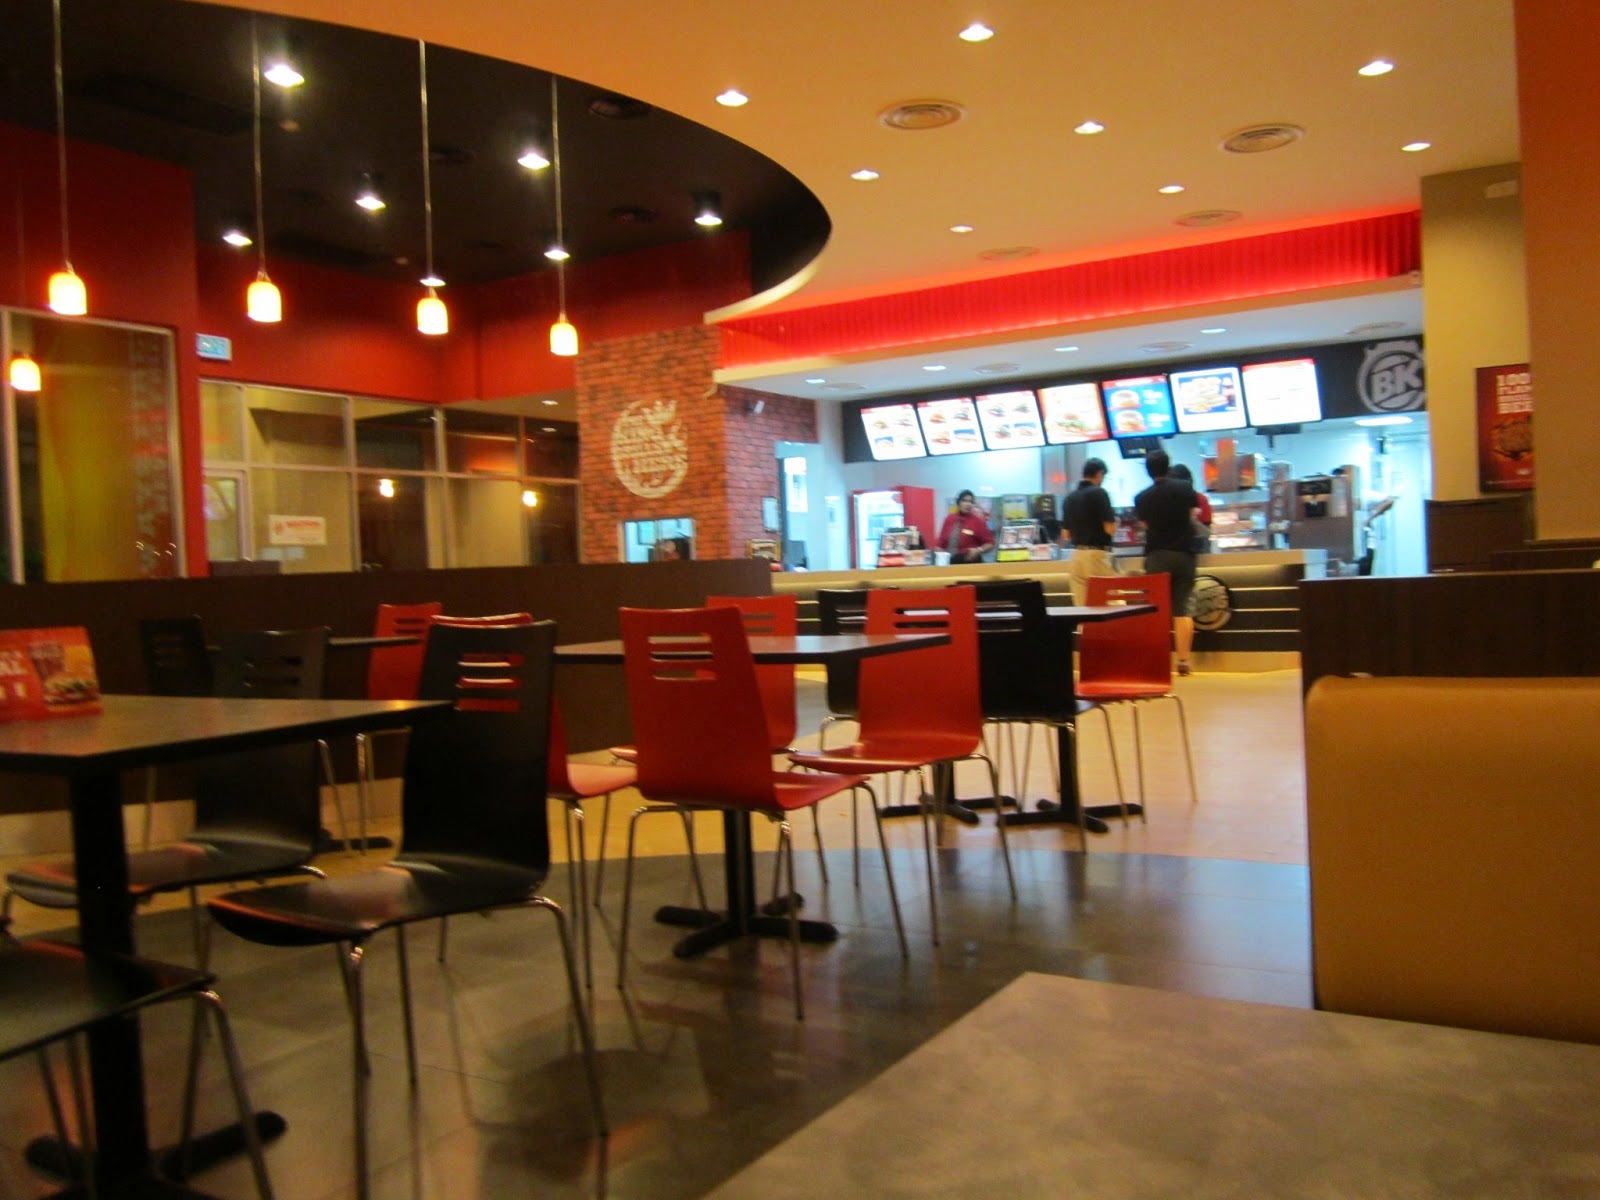 Our Journey : Penang Precinct 10 - Burger King Fast Food Restaurants